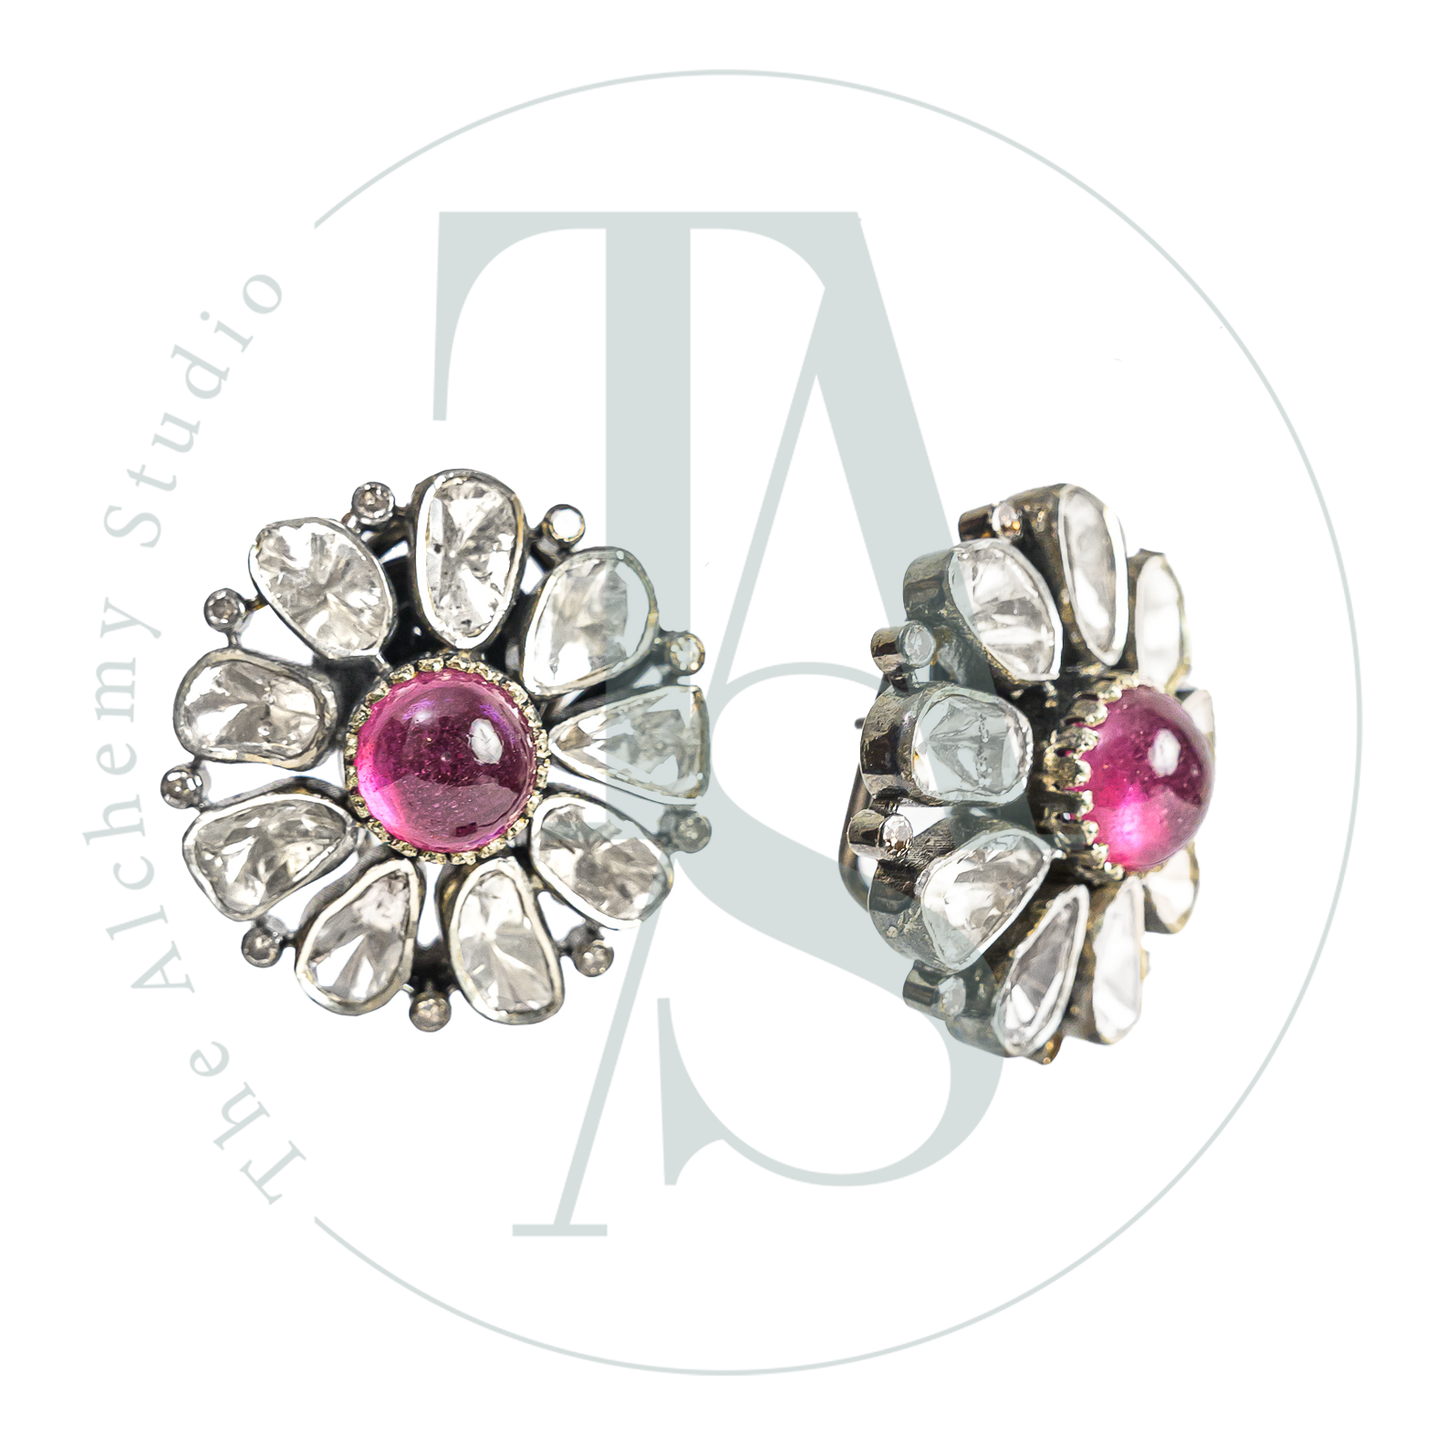 Amara Ruby Uncut Diamond Flower Earrings